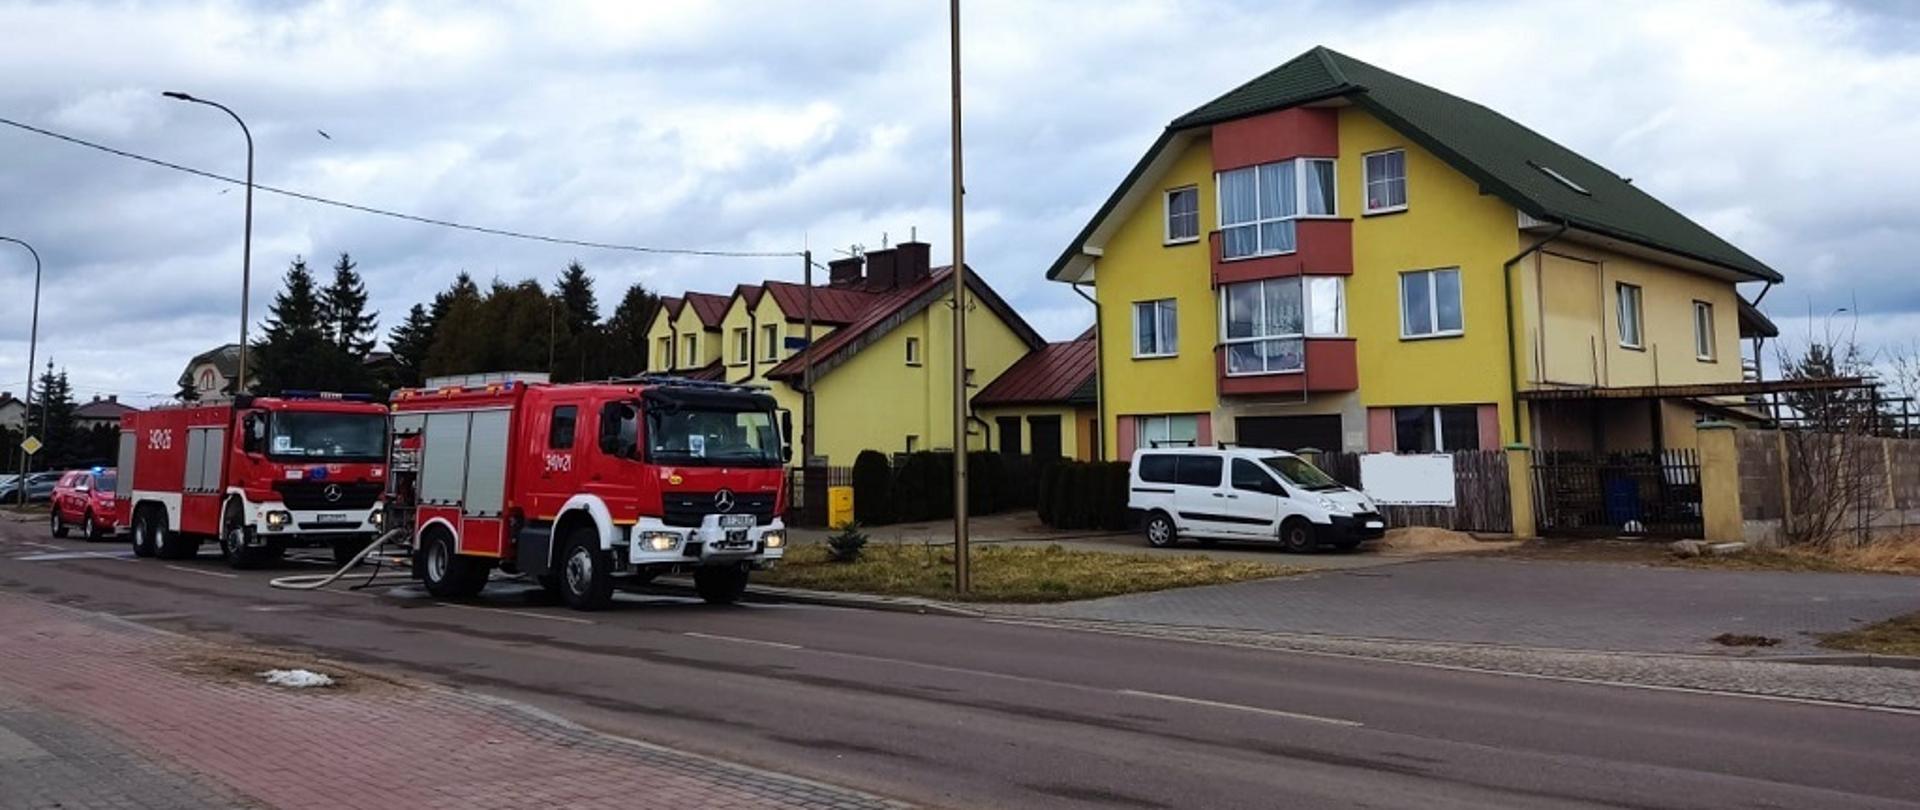 Samochody pożarnicze stoją na ulicy przed budynkiem 